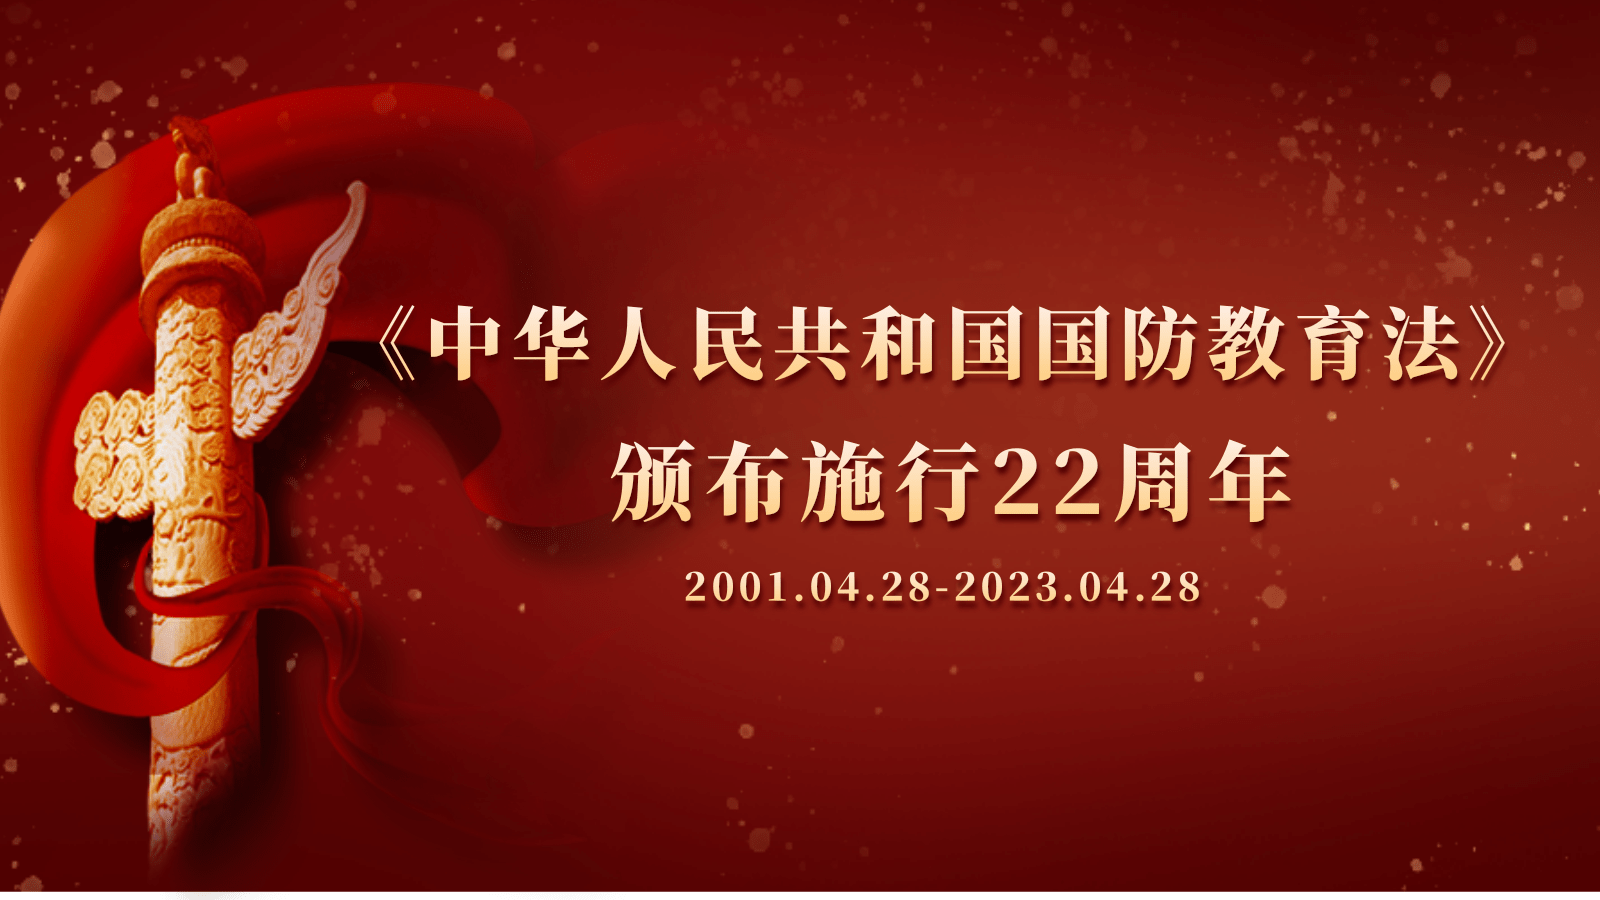 《中华人民共和国国防教育法》颁布施行22周年宣传专题